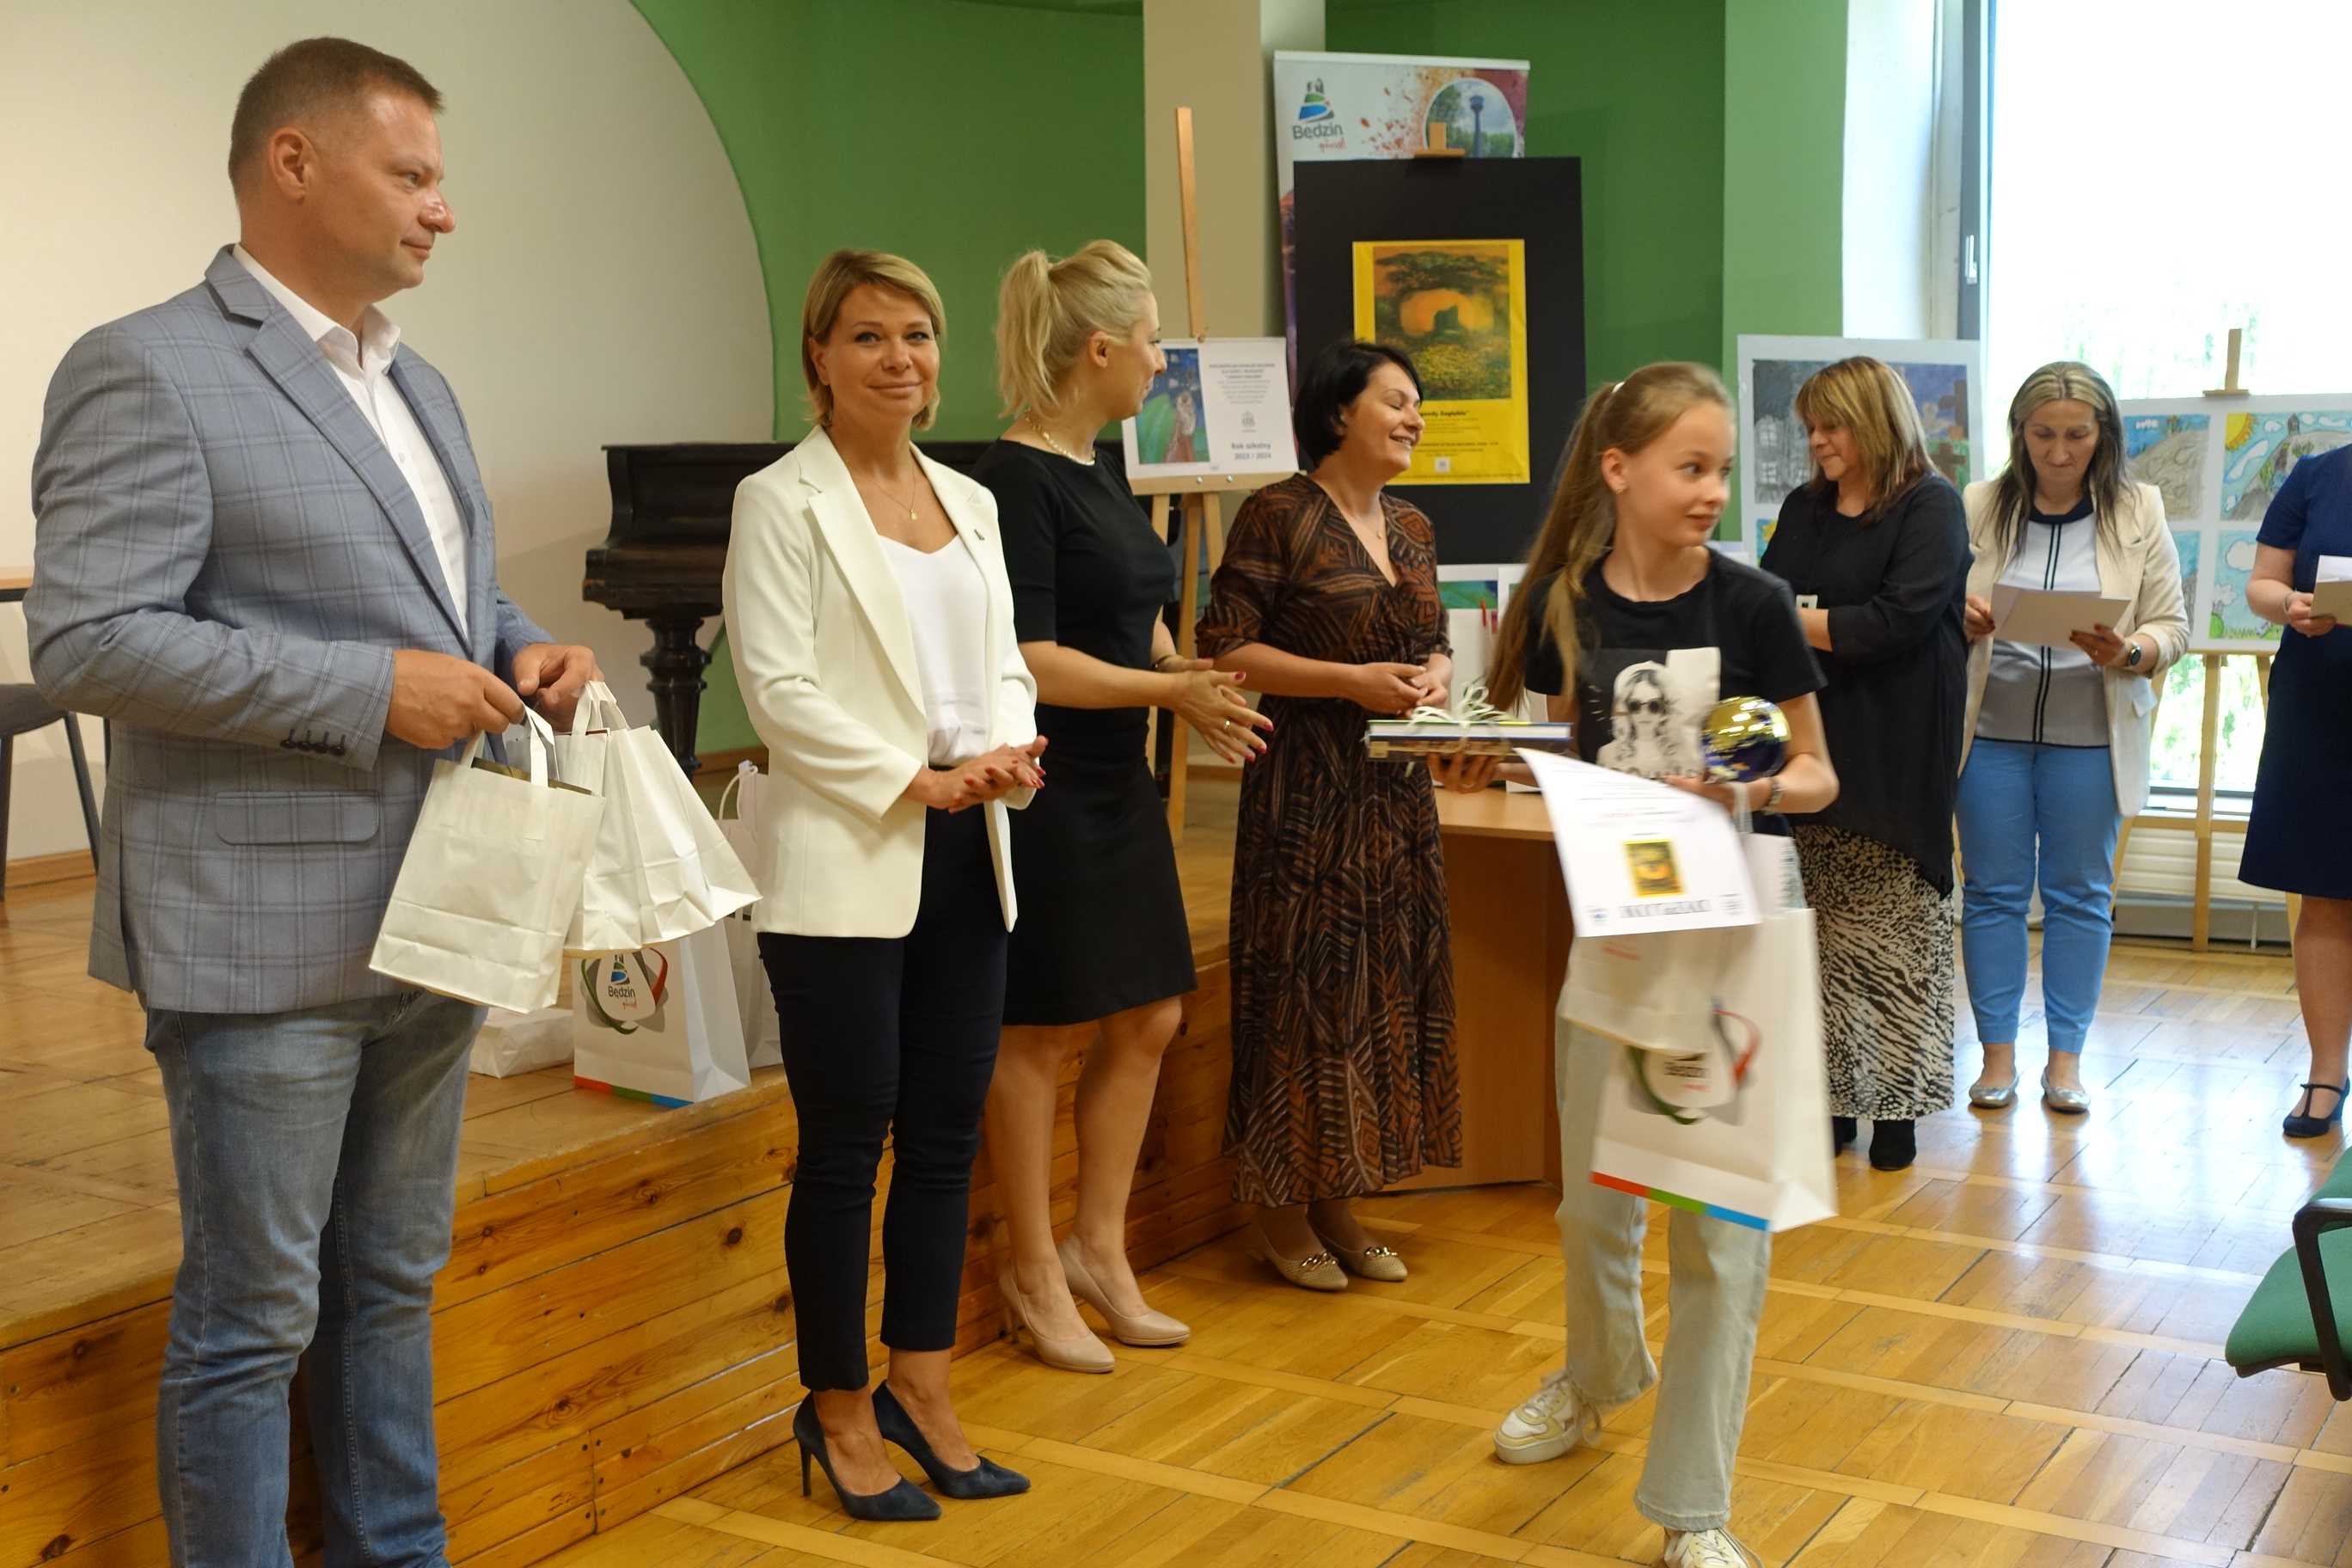 odbiór nagrody przez uczestniczkę na Ogólnopolskim Konkursie Malarskim "Zagłębiowskie legendy" - MOK Wojkowice